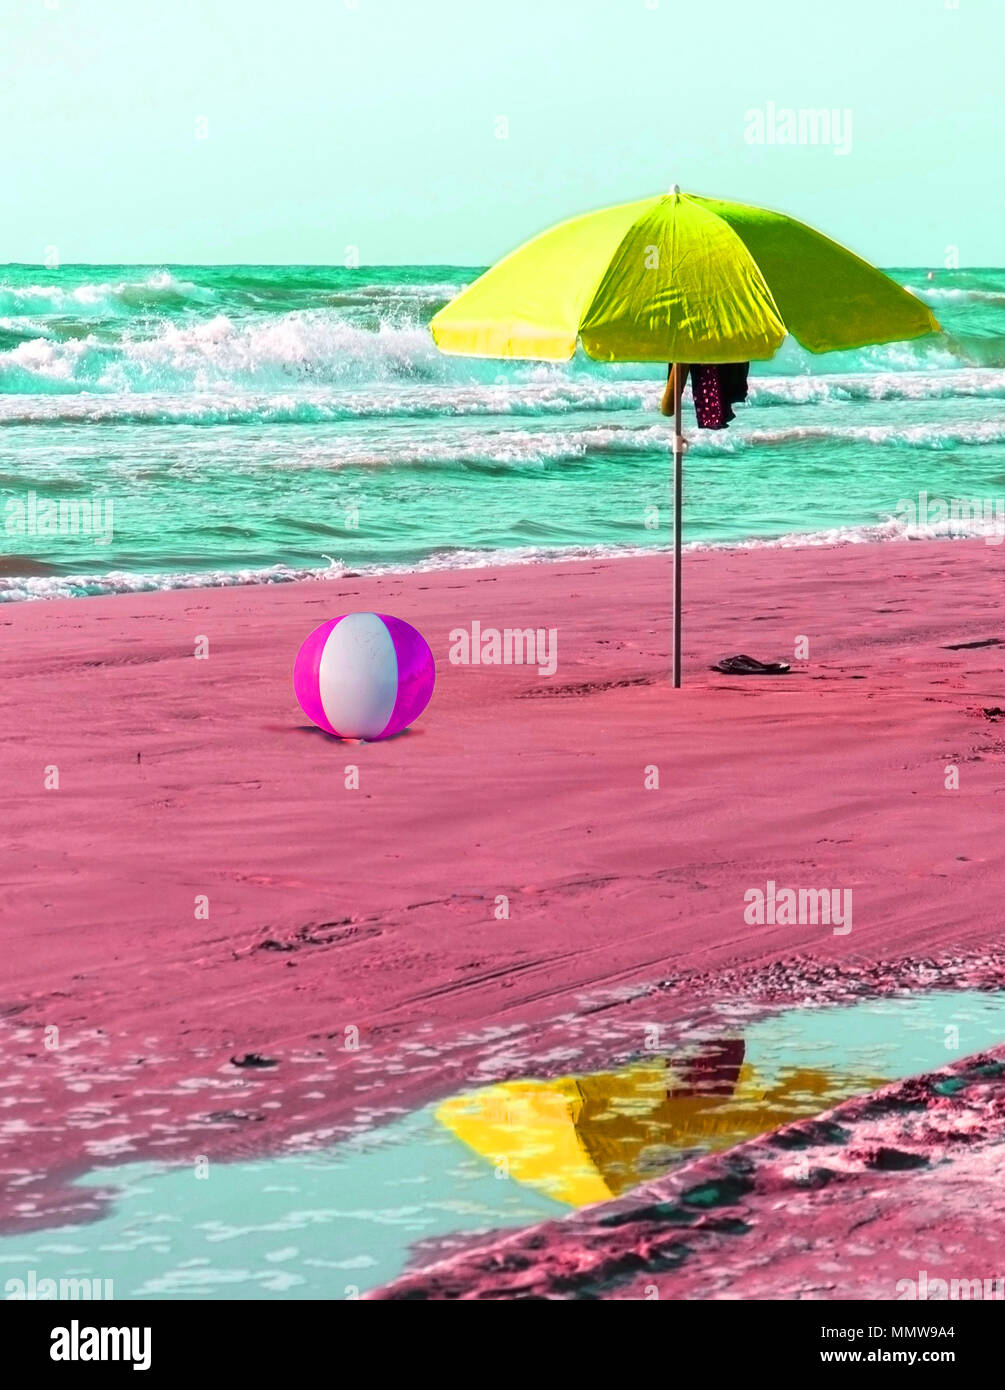 Pallone da spiaggia gonfiabile variopinto immagini e fotografie